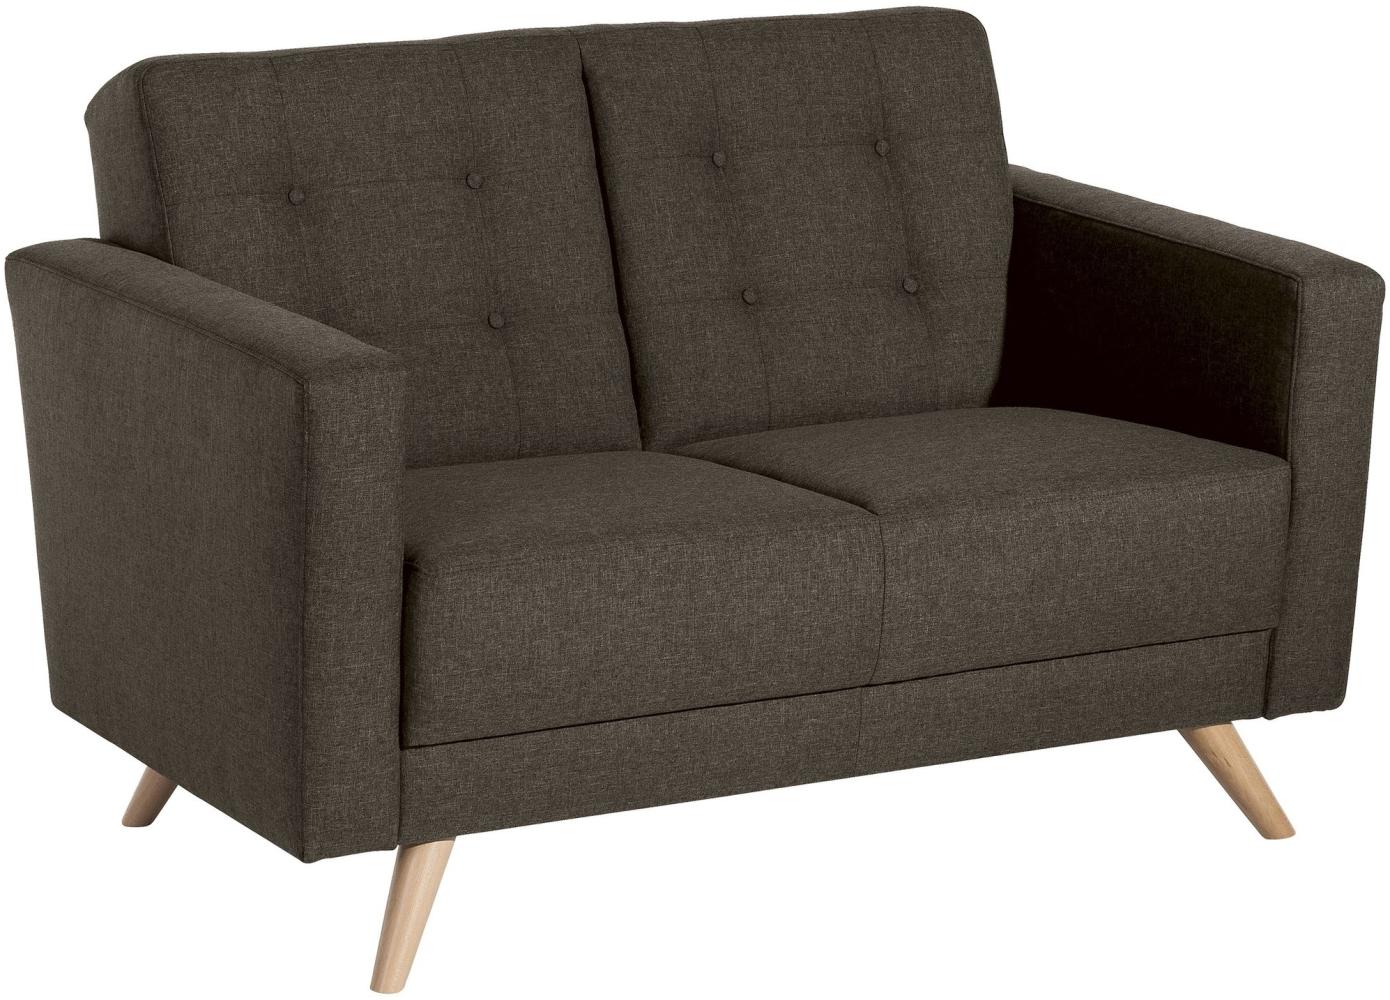 Sofa 2-Sitzer Karisa Bezug Flachgewebe Buche natur / braun 21910 Bild 1